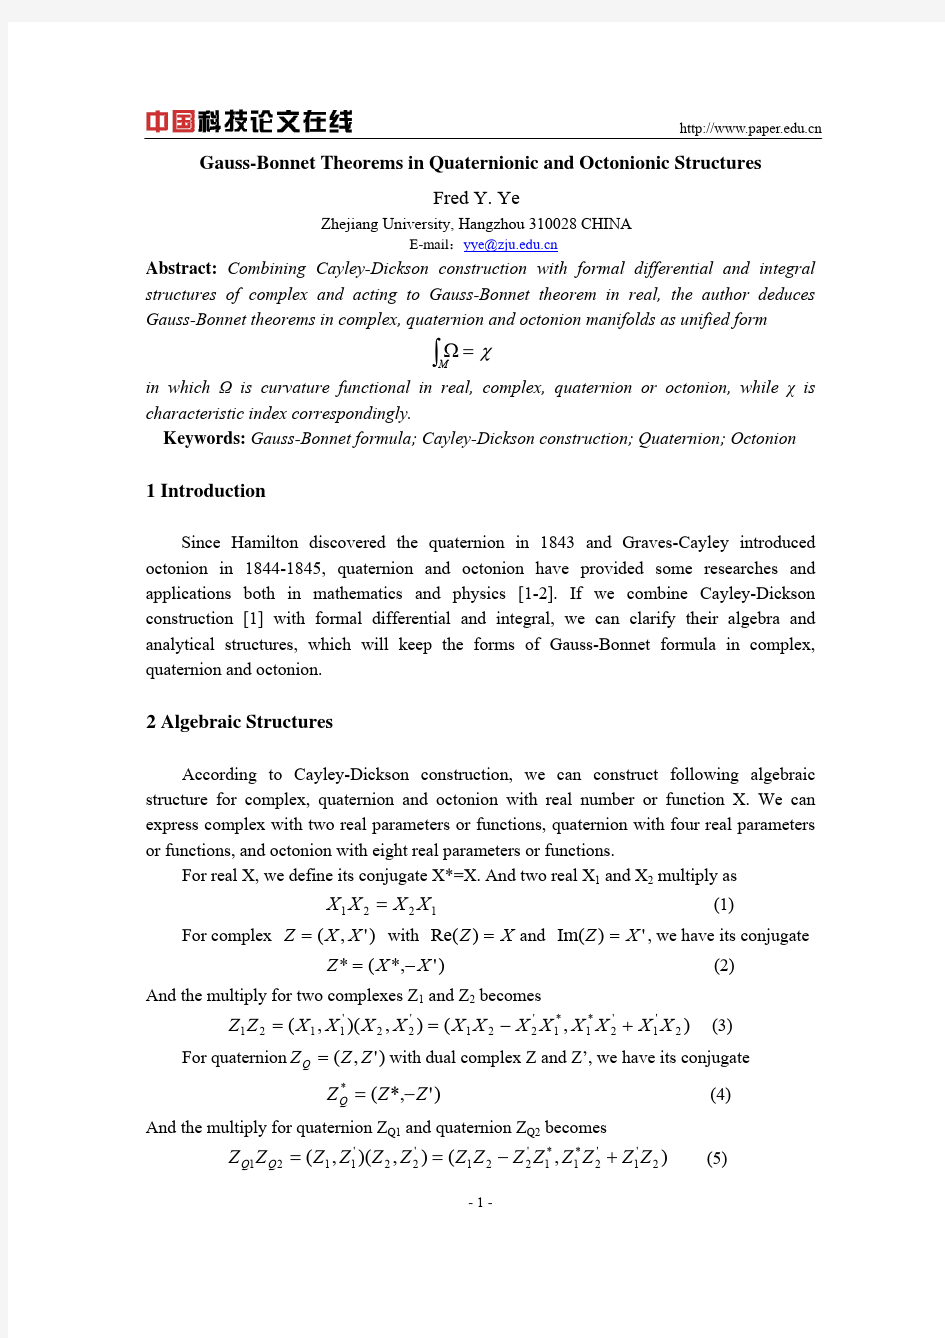 四元数和八元数结构中的Gauss-Bonnet定理